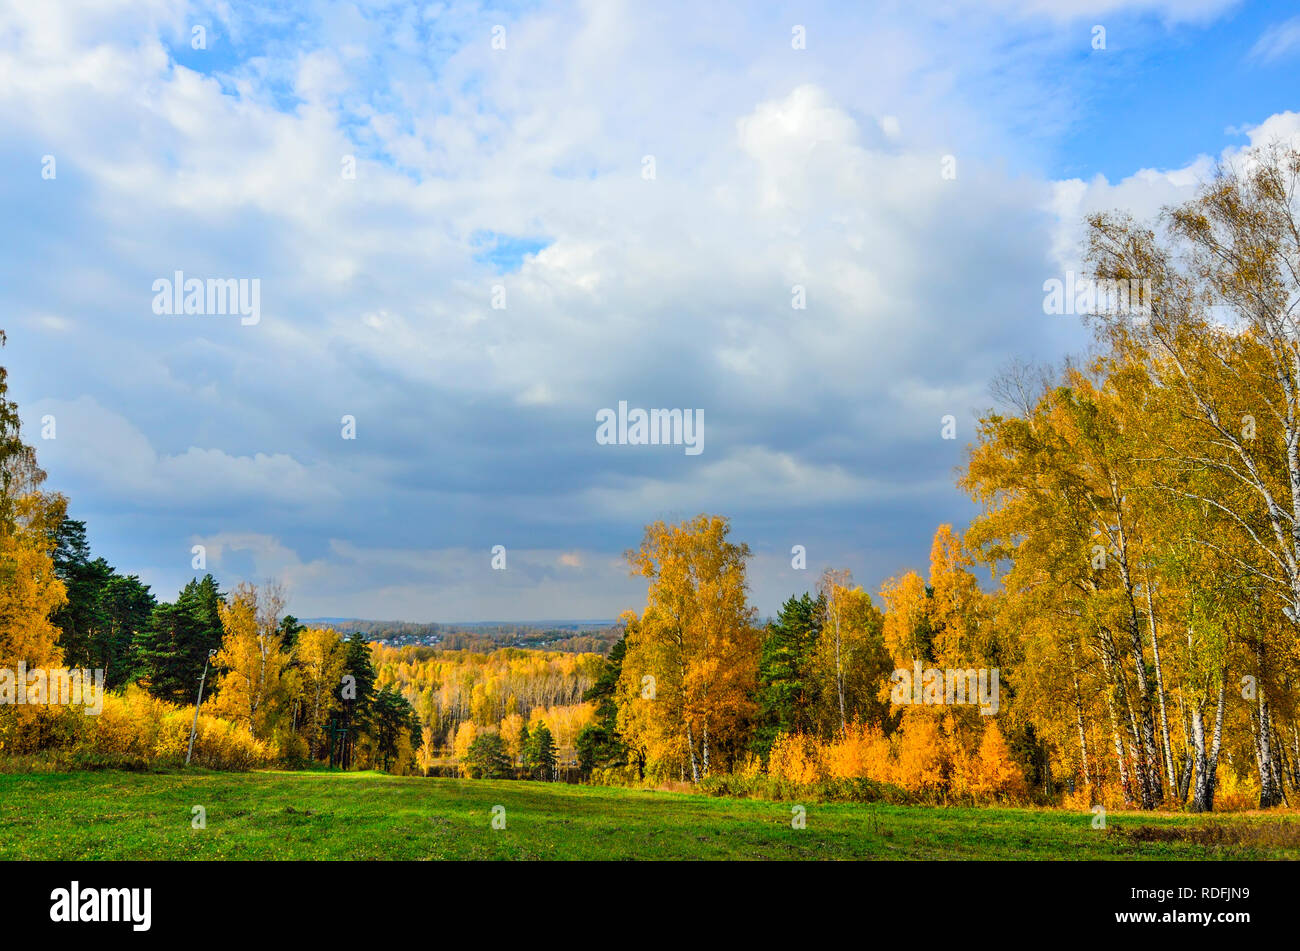 Schöne romantische Landschaft mit goldenen Birken und grünen Kiefern im Herbst Wald - helle Herbst Hintergrund bei warmen September Tag mit blauem Himmel und Stockfoto